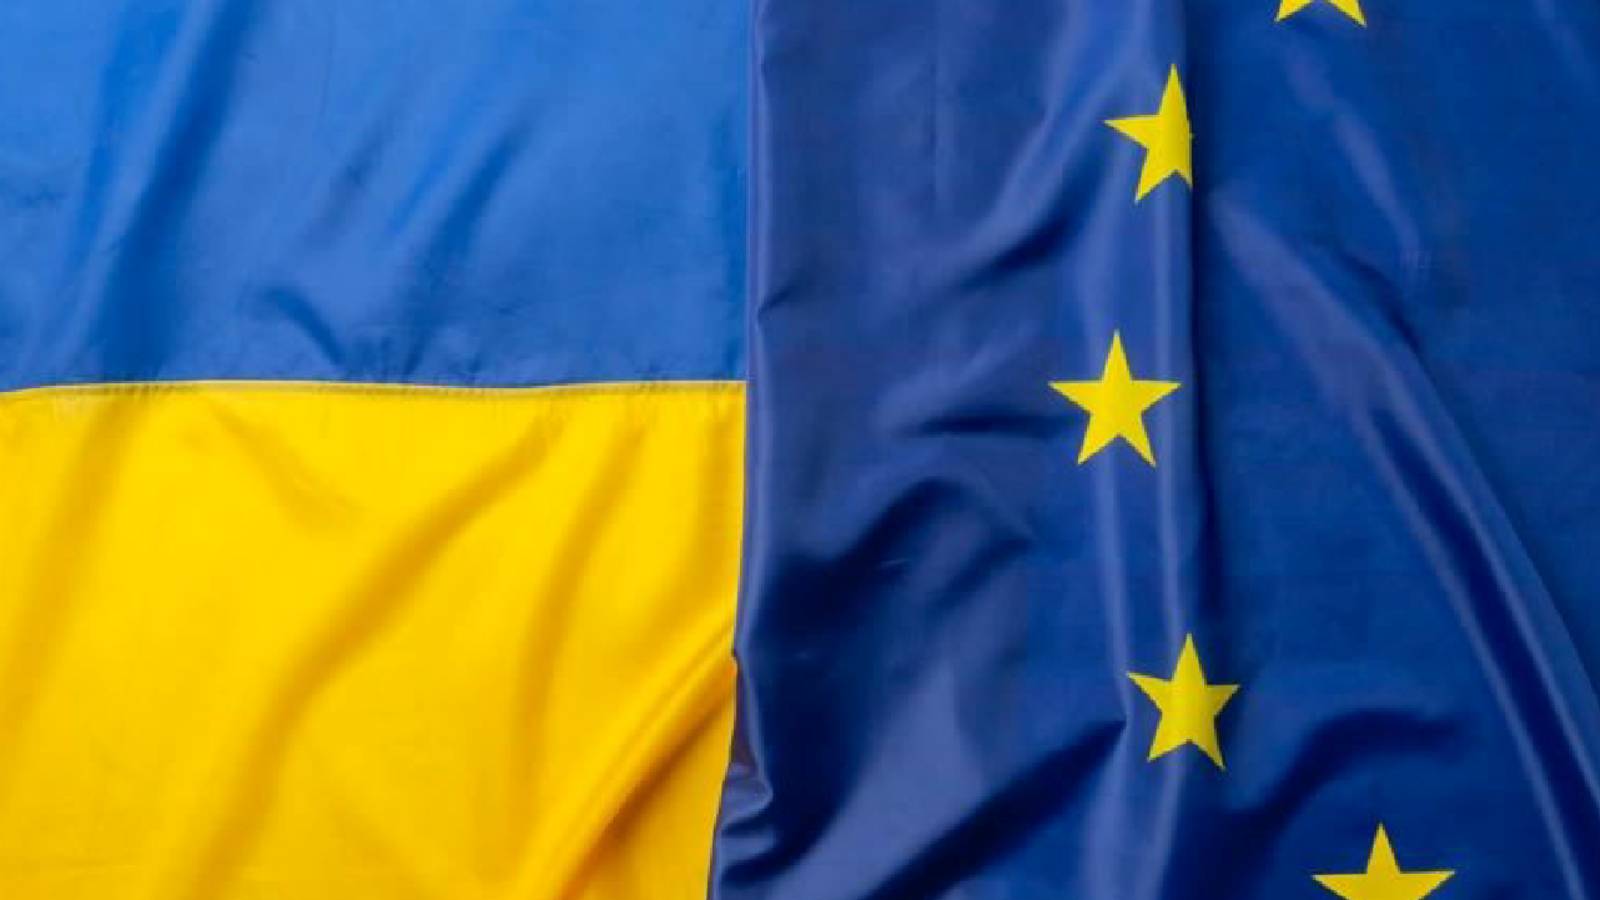 Uniunea Europeana Cumpara Multa Energie Electrica Ucraina